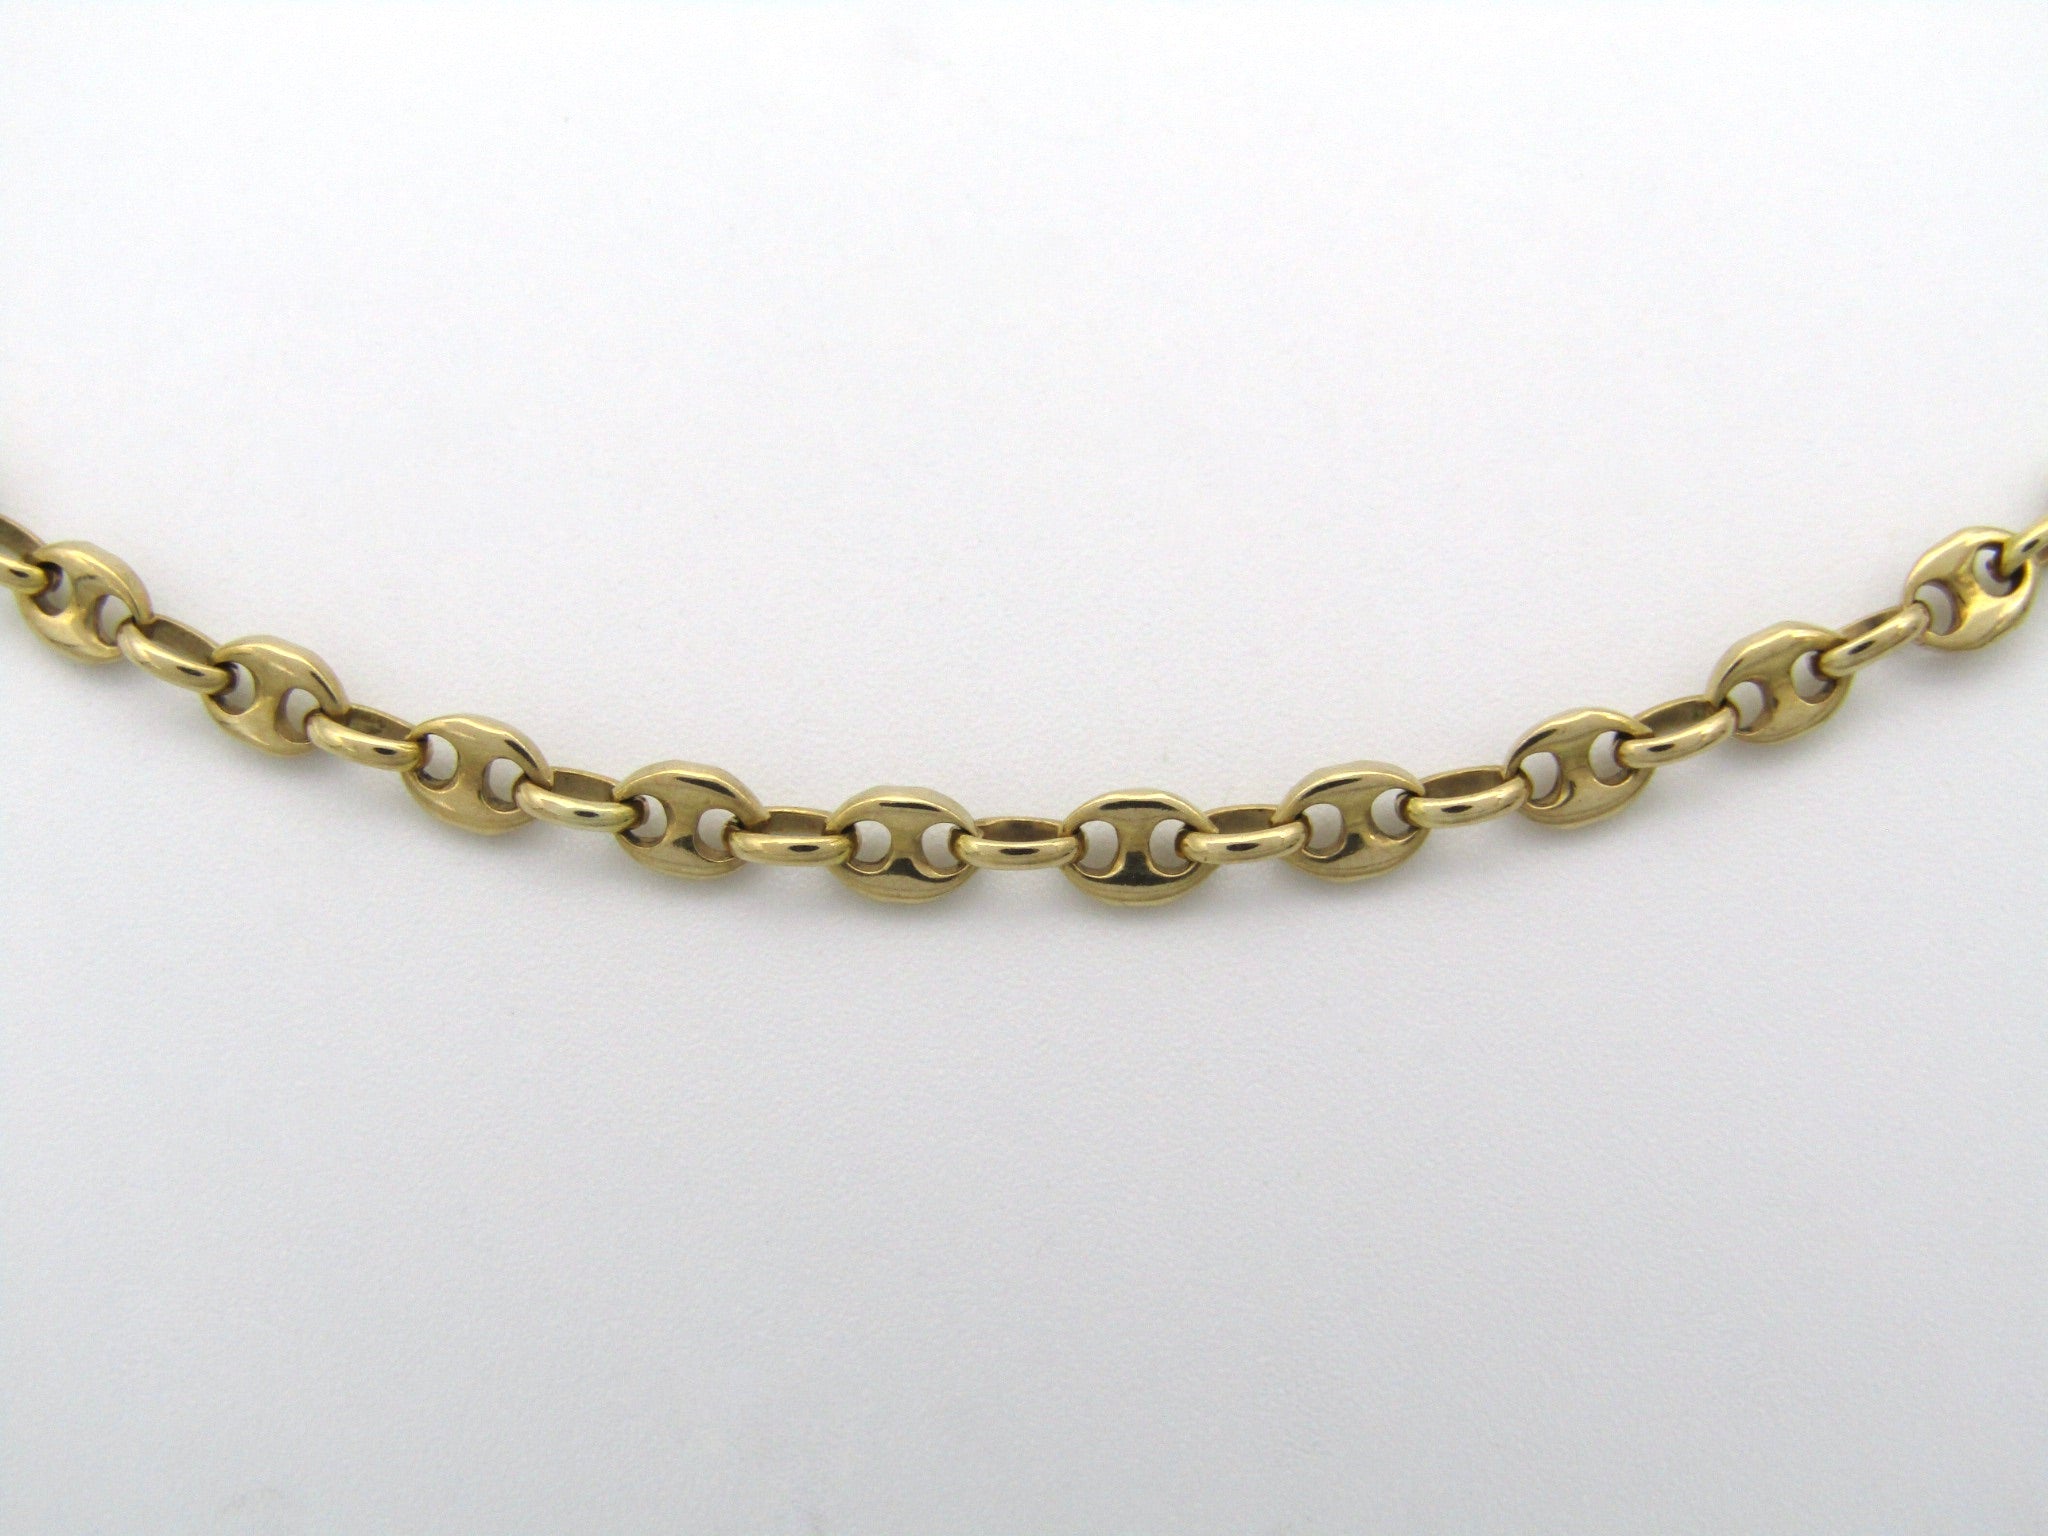 9K gold mariner link necklace.